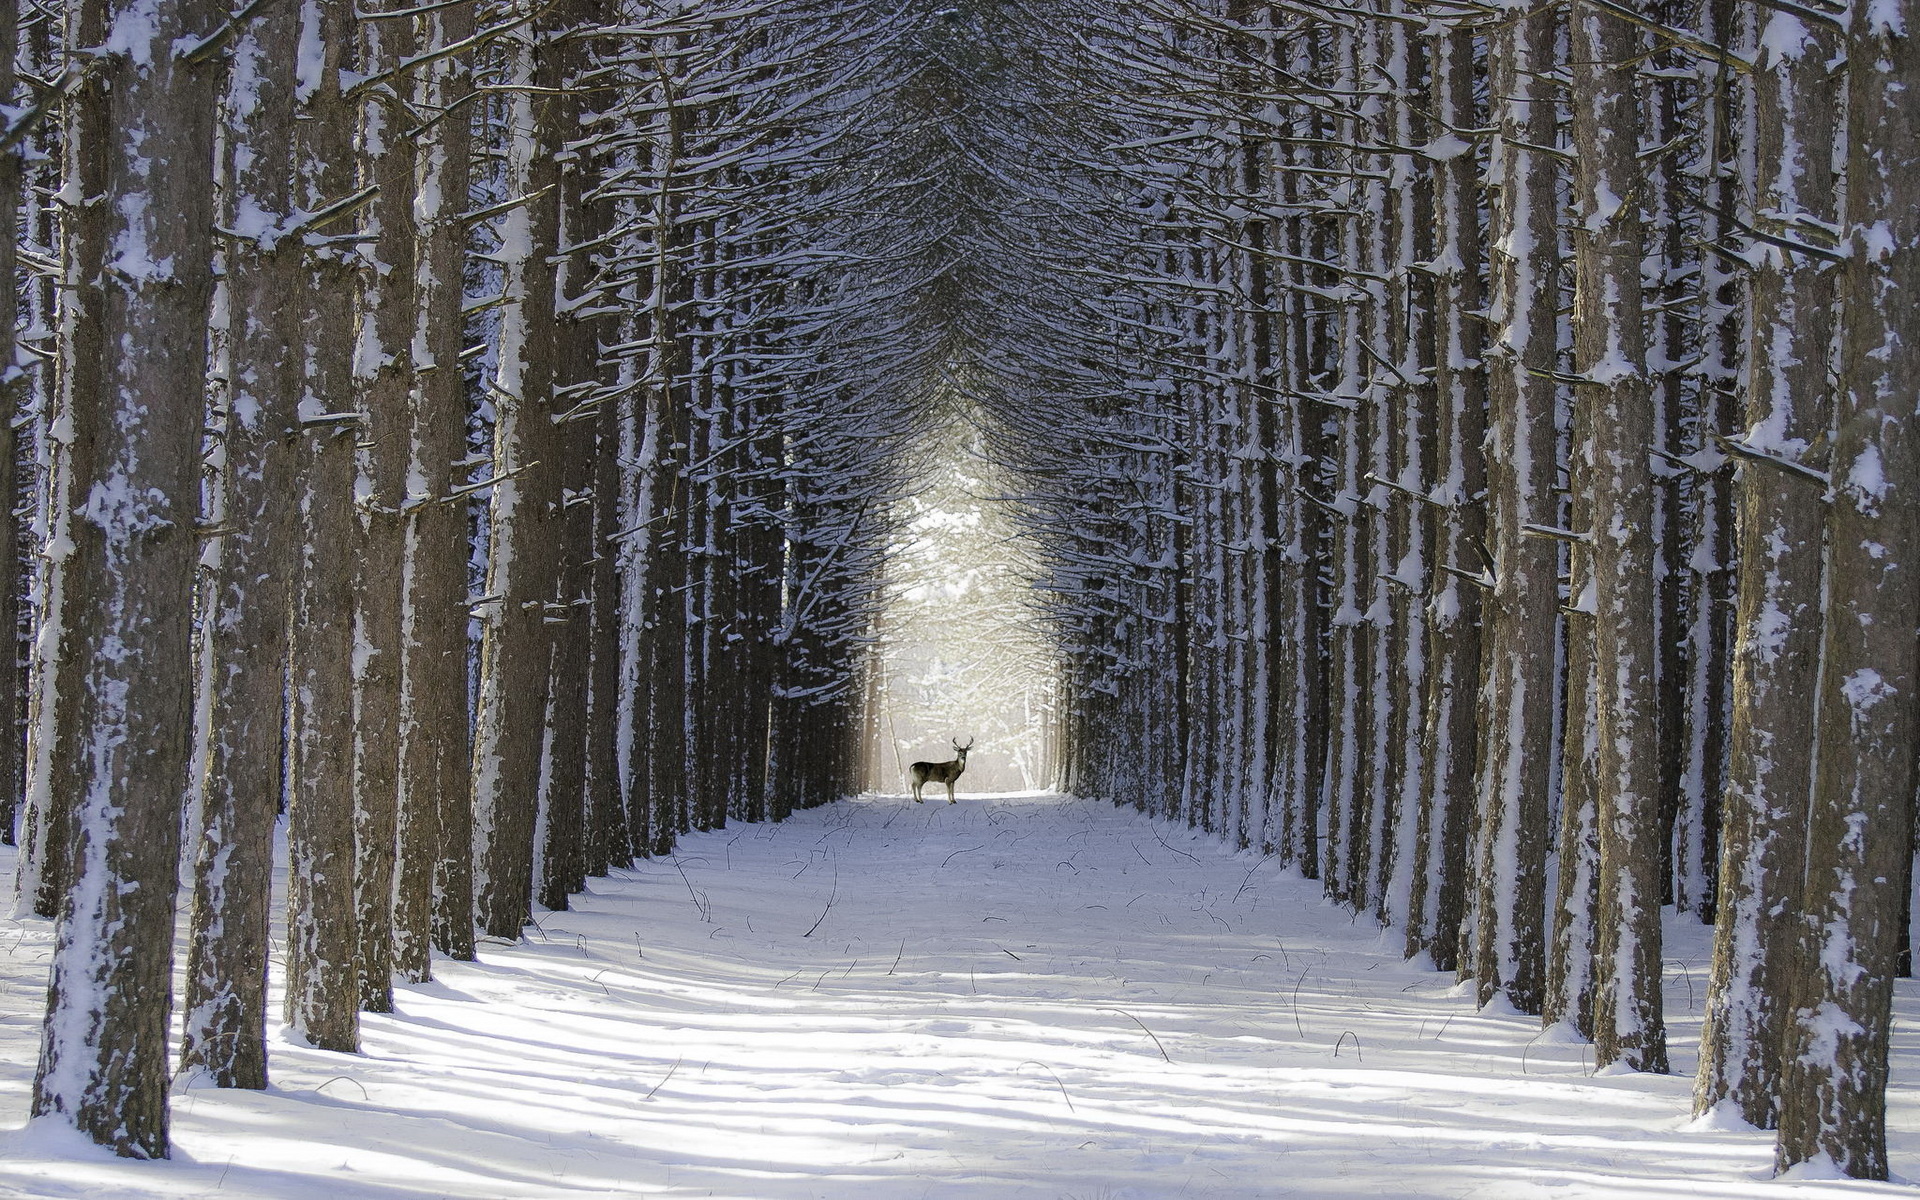 Deer, Snowy forest, Winter scenery, Spruce trees, 1920x1200 HD Desktop